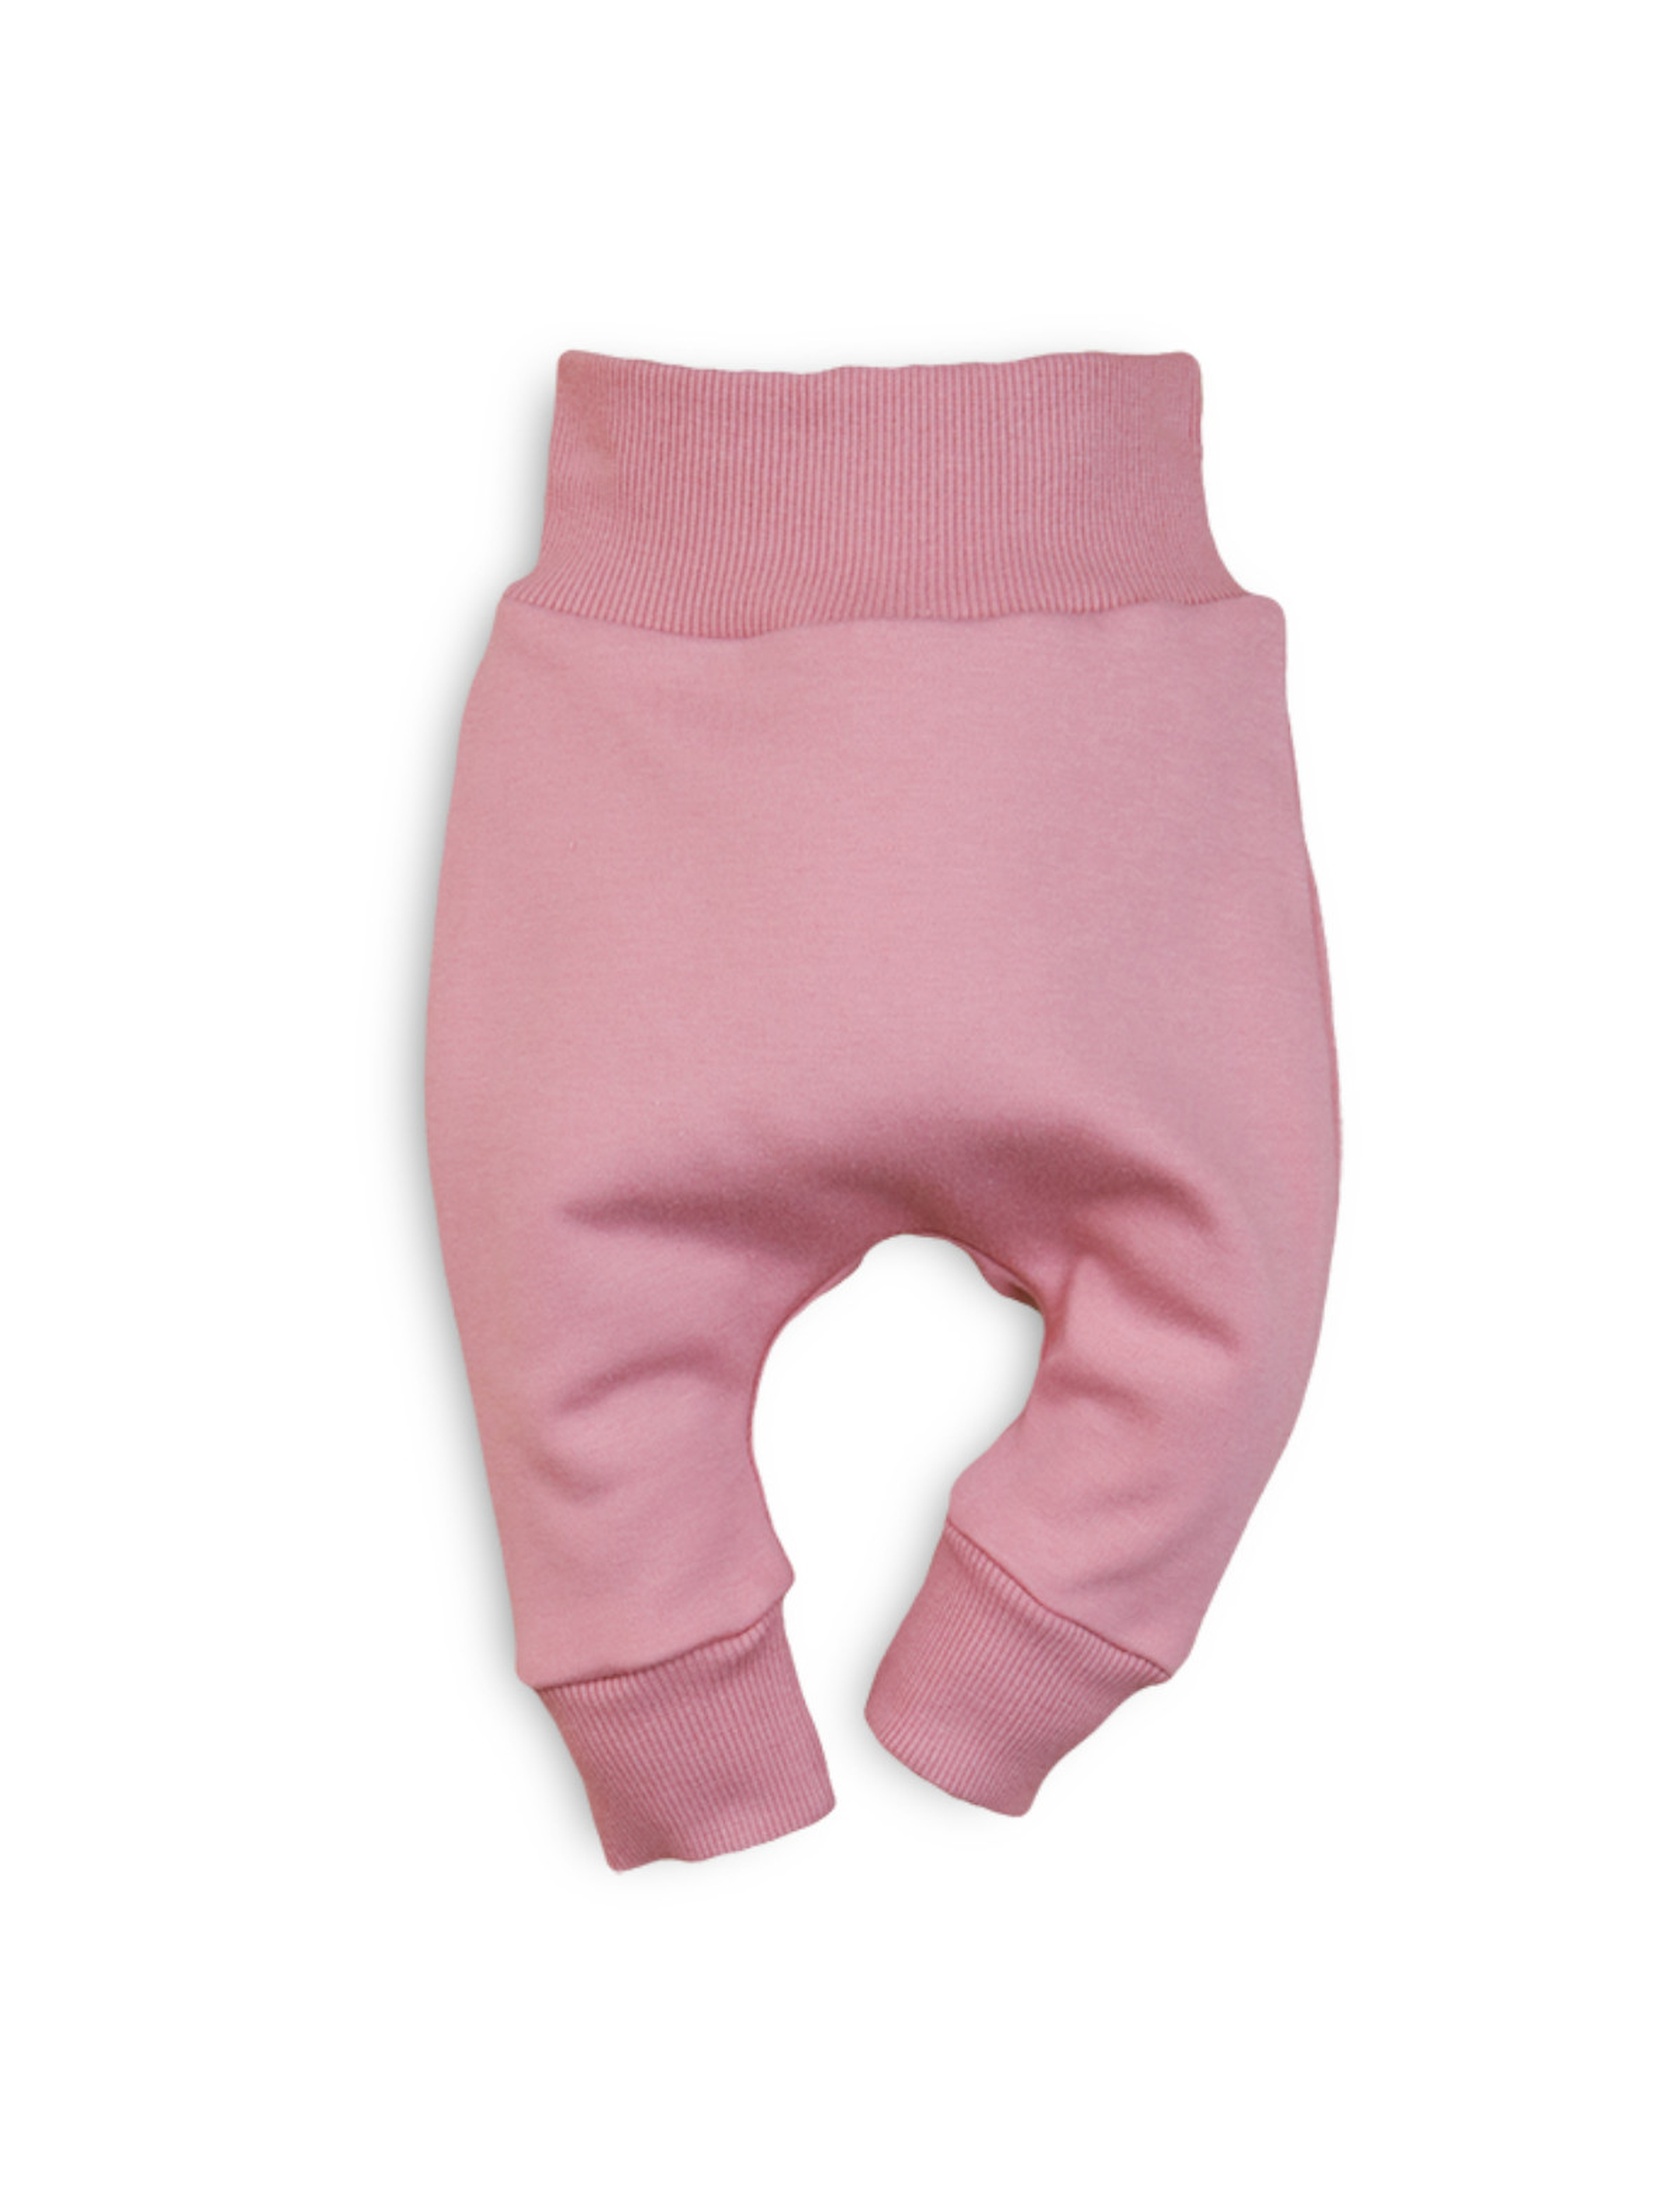 Spodnie niemowlęce z bawełny organicznej dla dziewczynki różowe 6M43A8